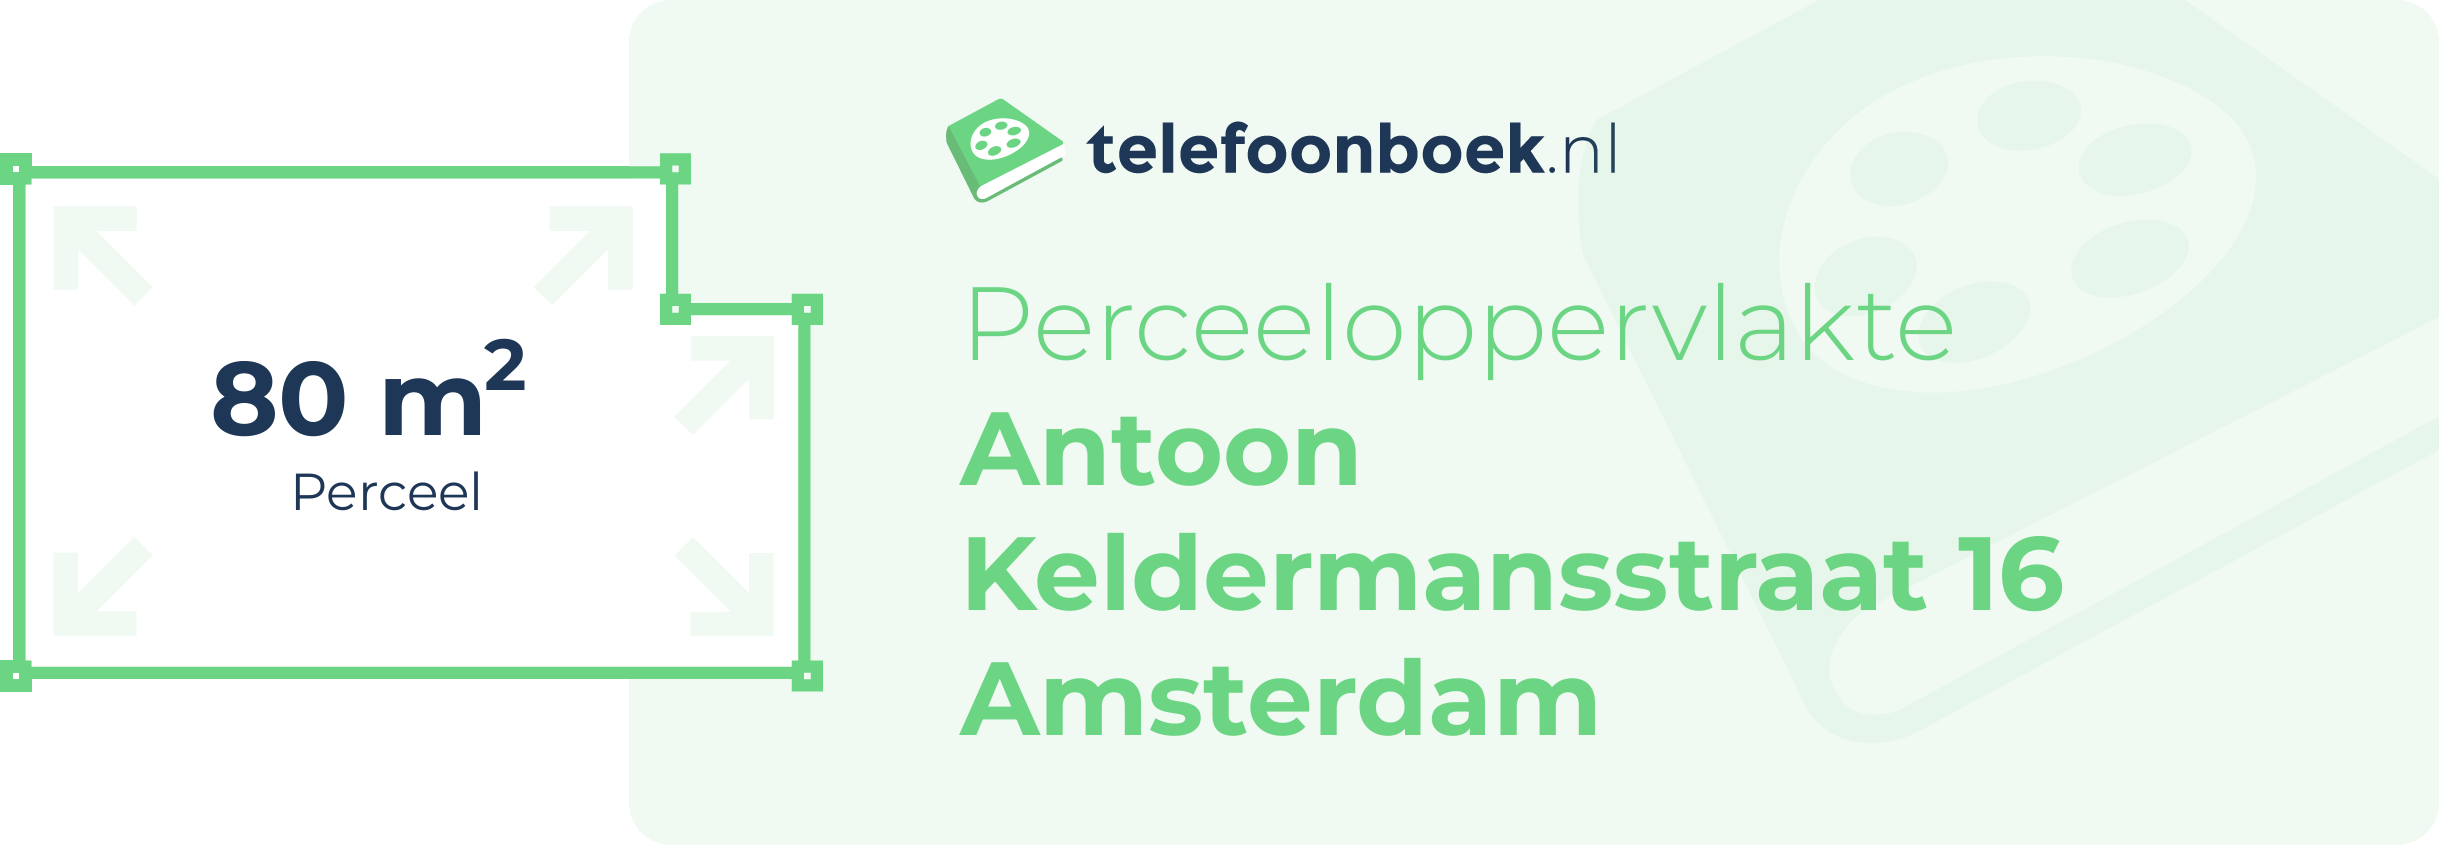 Perceeloppervlakte Antoon Keldermansstraat 16 Amsterdam